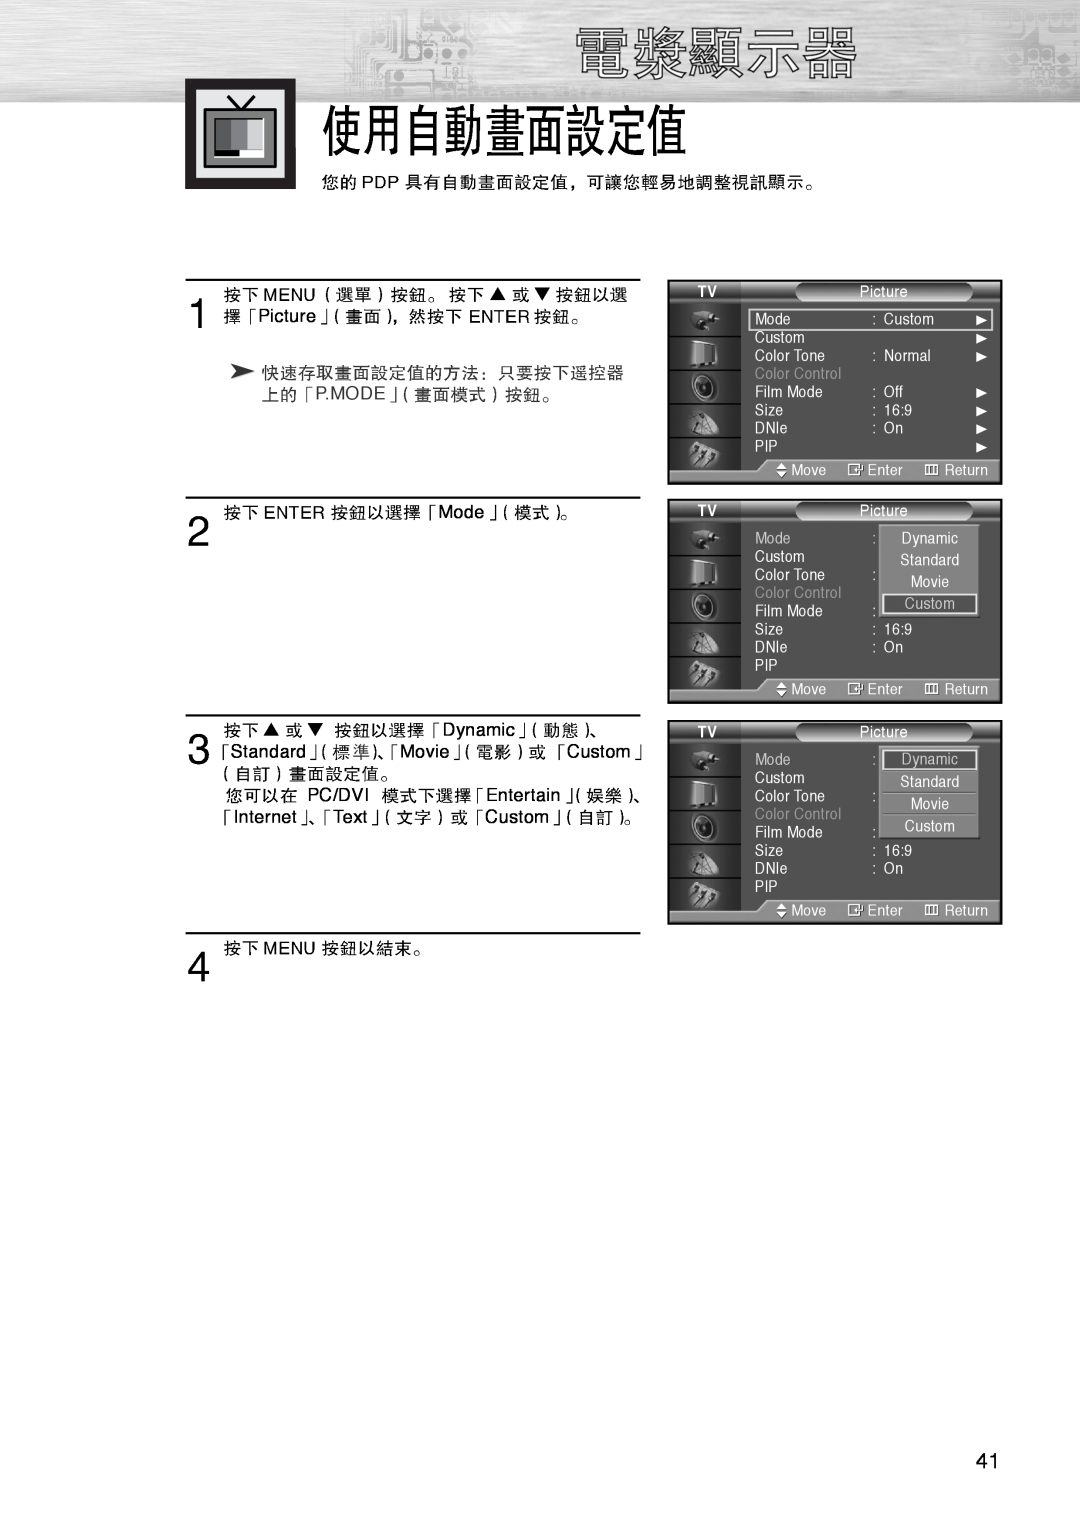 Samsung PL-42D4S manual P.Mode, Color Control 